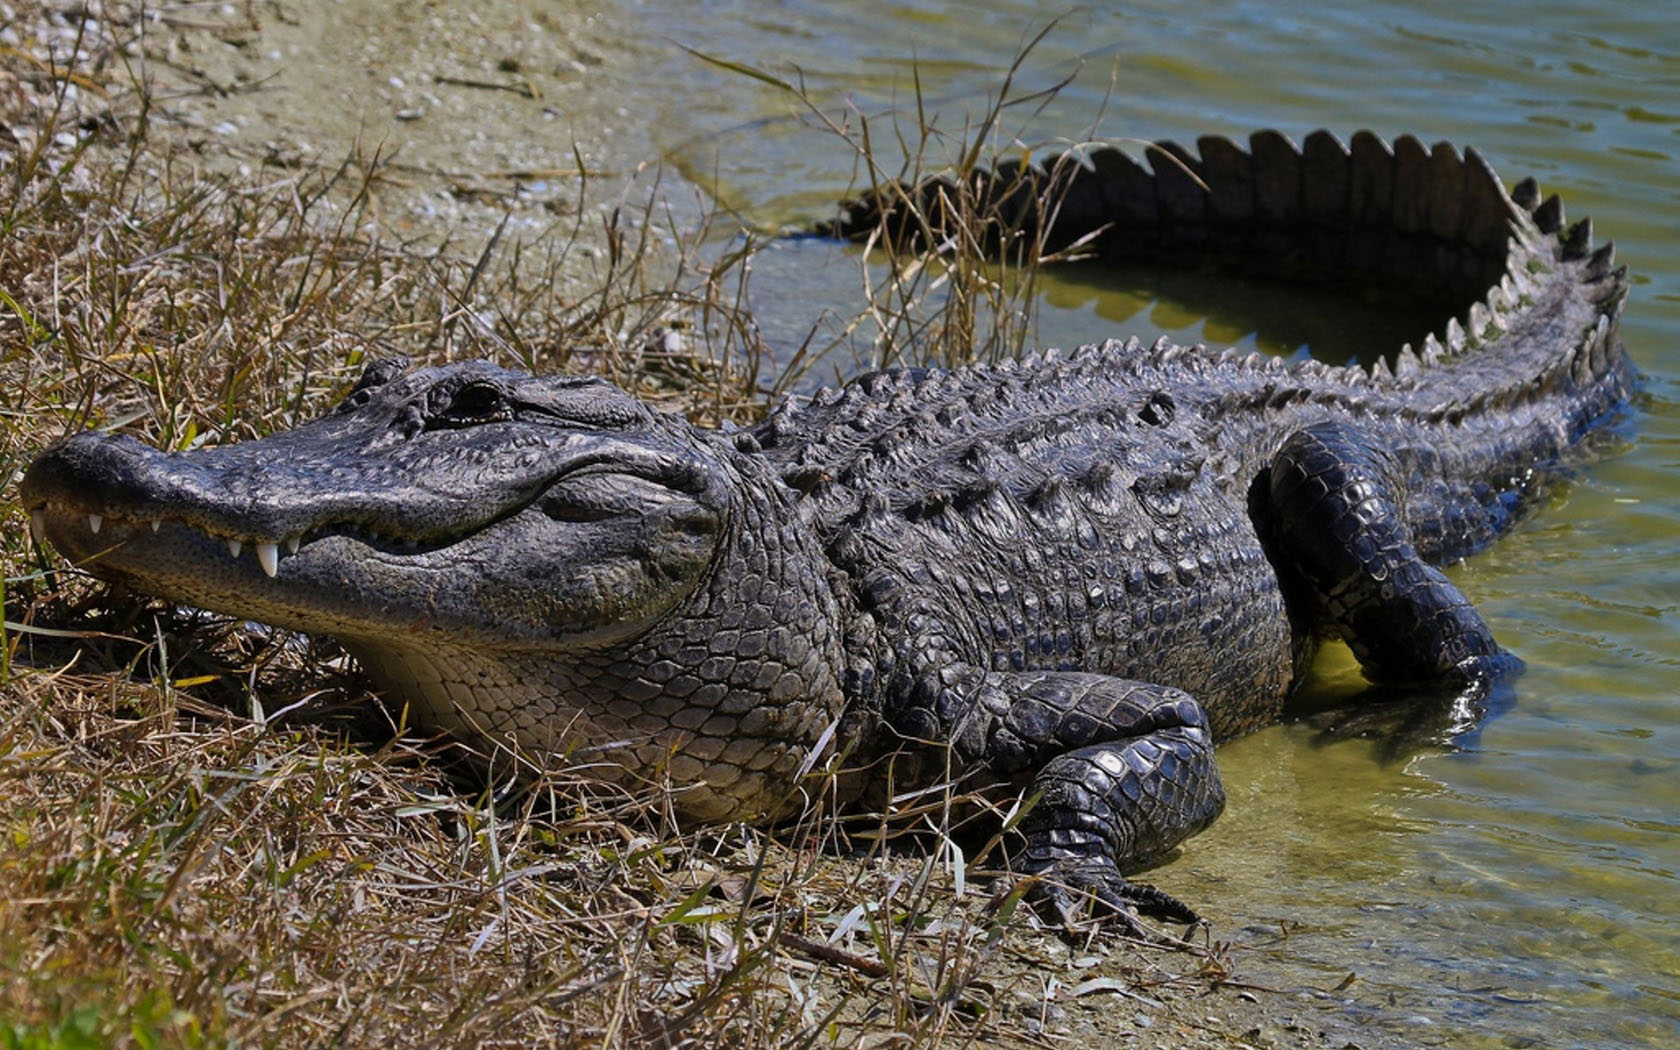 alligator wallpaper,crocodilia,alligator,reptile,crocodile,saltwater crocodile